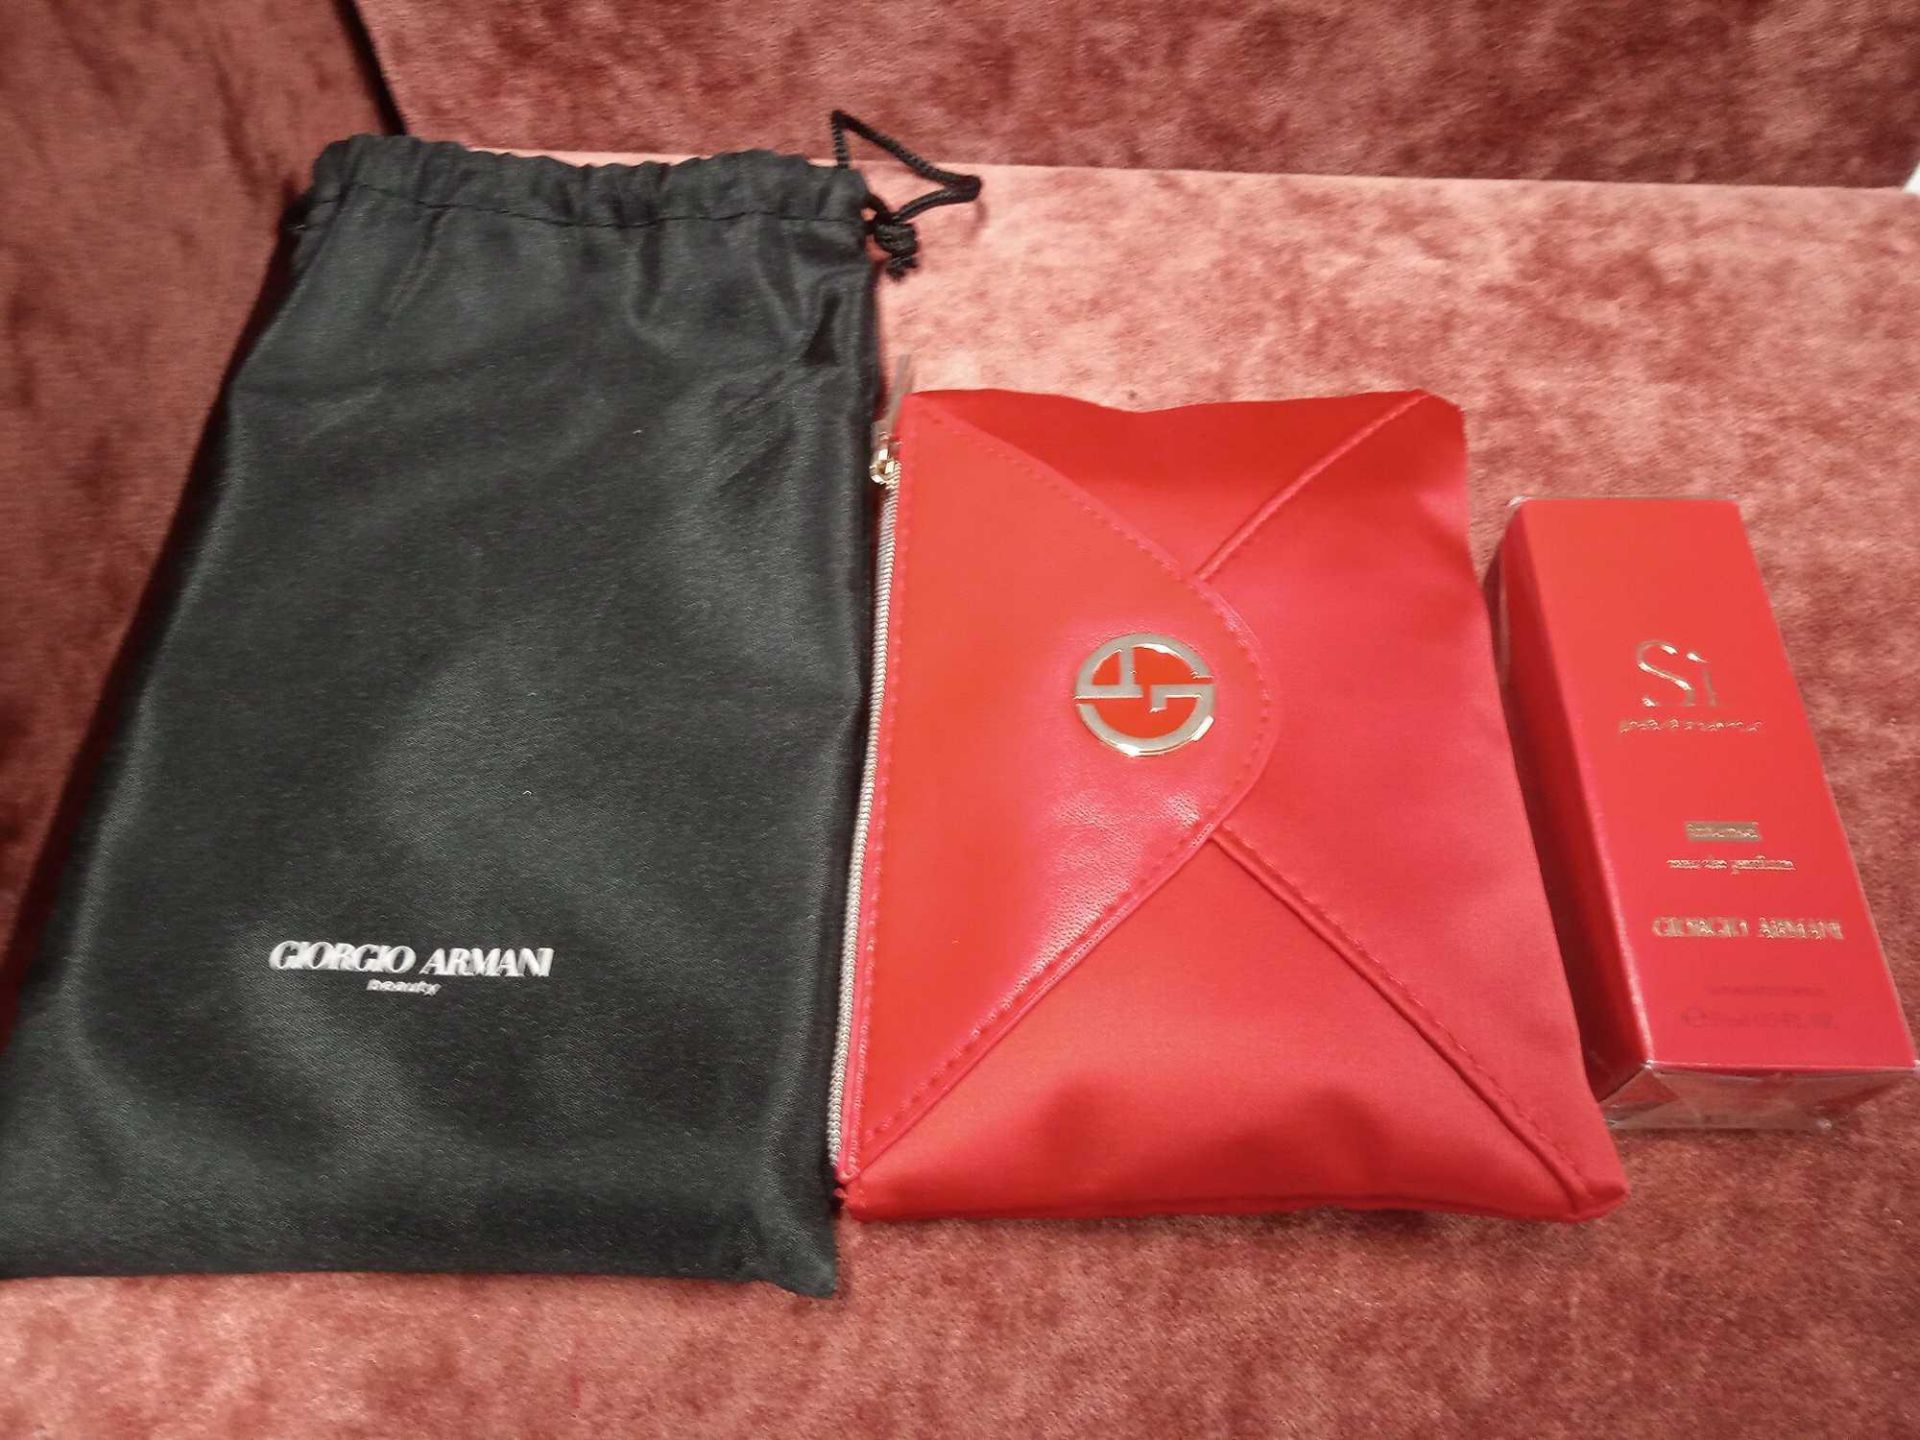 RRP £70 Brand New Giorgio Armani Beauty Si Passione Intense Gift Set To Contain Giorgio Armani Red P